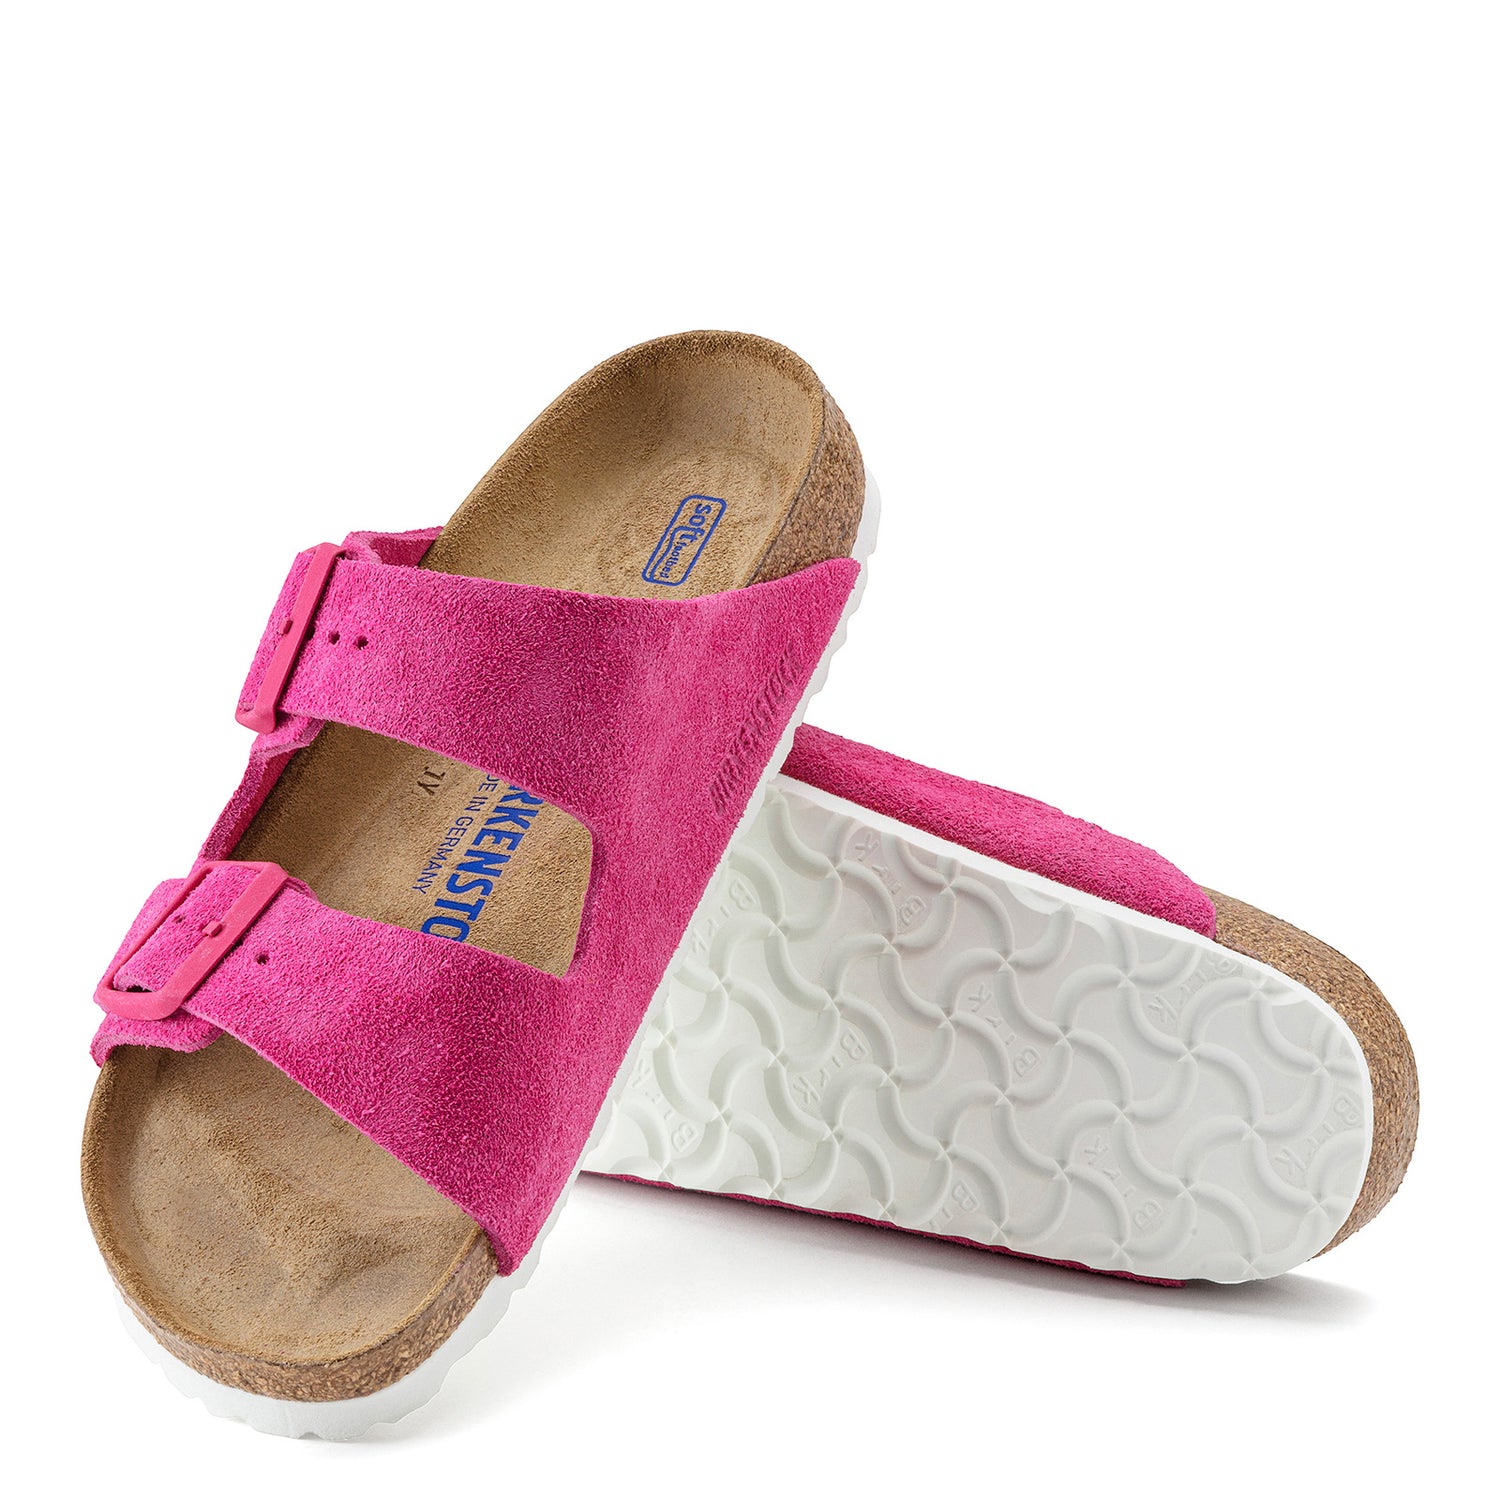 Peltz Shoes  Women's Birkenstock Arizona Soft Footbed Sandal - Narrow Width FUSCHIA 1021 442 N